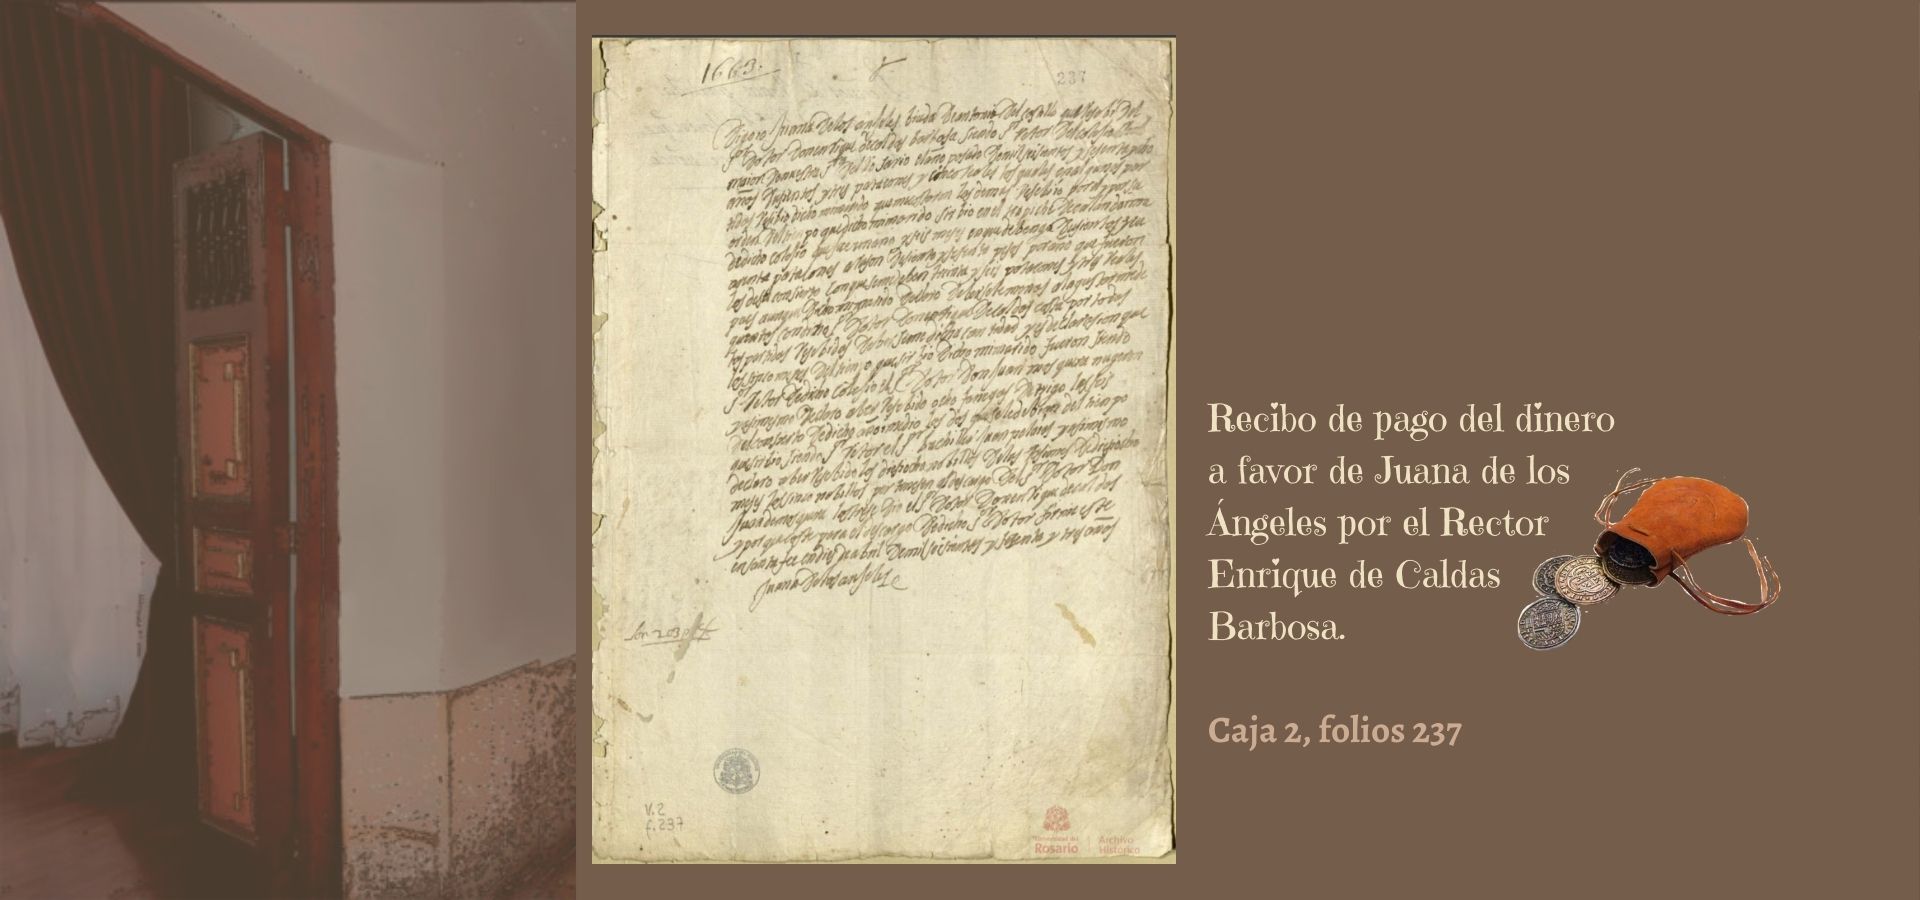 Recibo de pago del dinero a favor de Juana de los Ángeles por el Rector Enrique de Caldas Barbosa